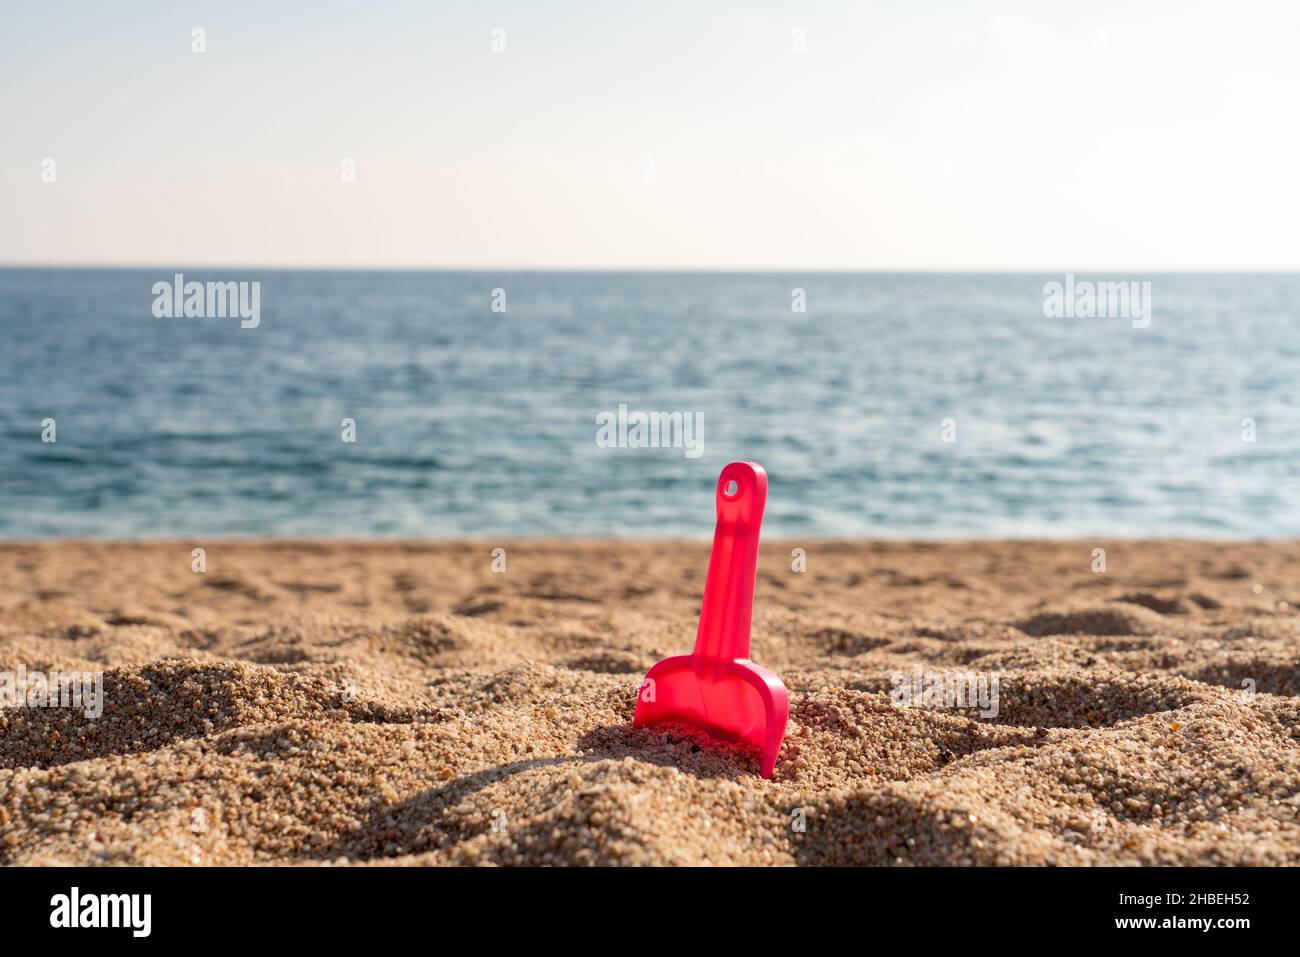 Rote Schaufel im Strandsand mit Meer oder Meer im Hintergrund Stockfoto